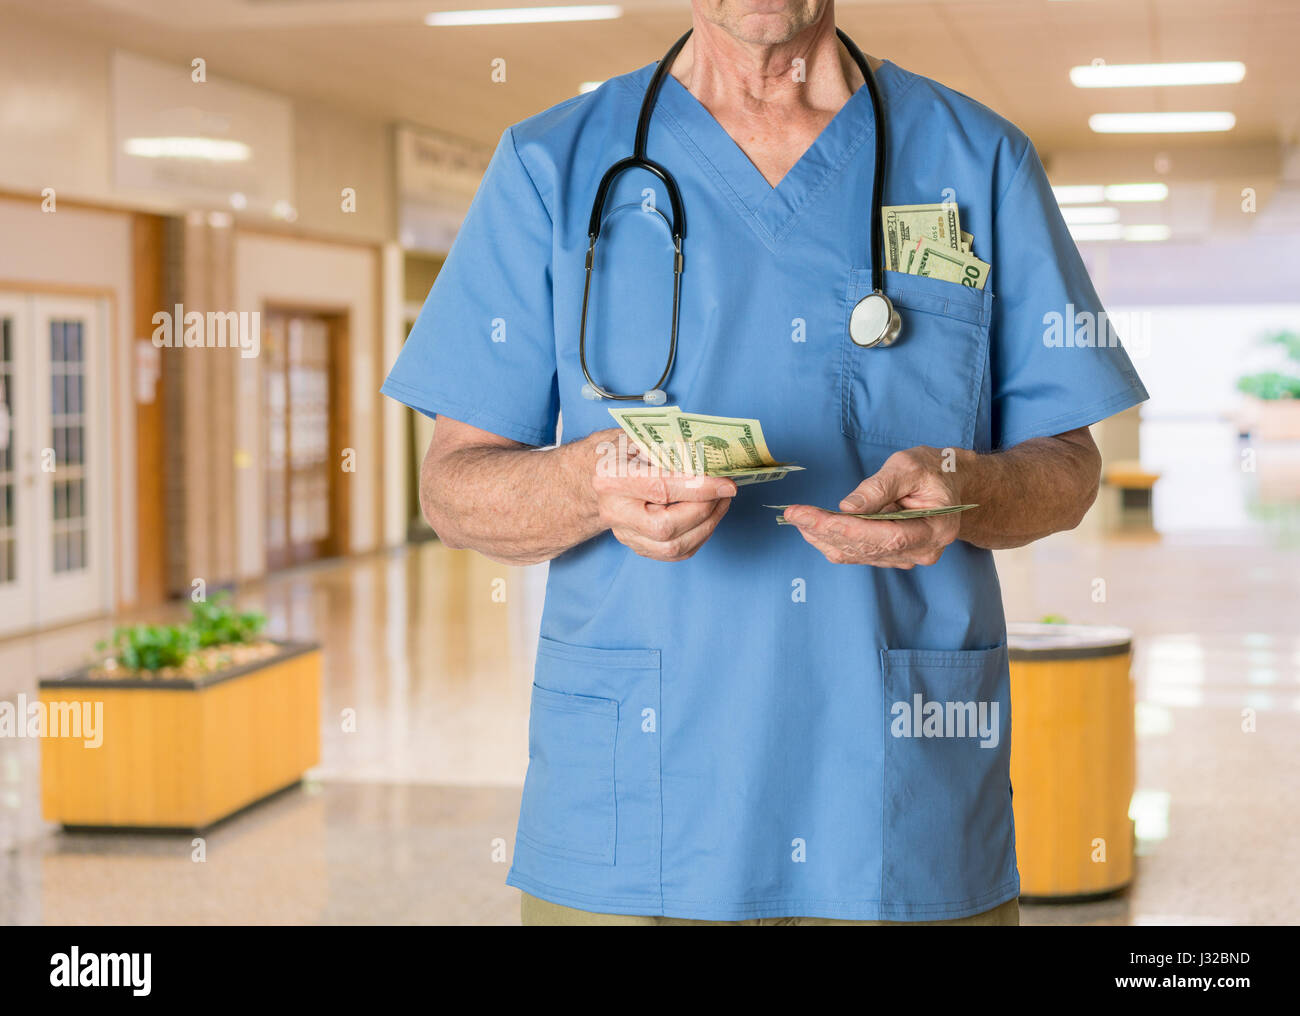 Médecin dans scrubs en argent comptant de l'hôpital - soins de santé, l'assurance maladie, les factures médicales concept Banque D'Images